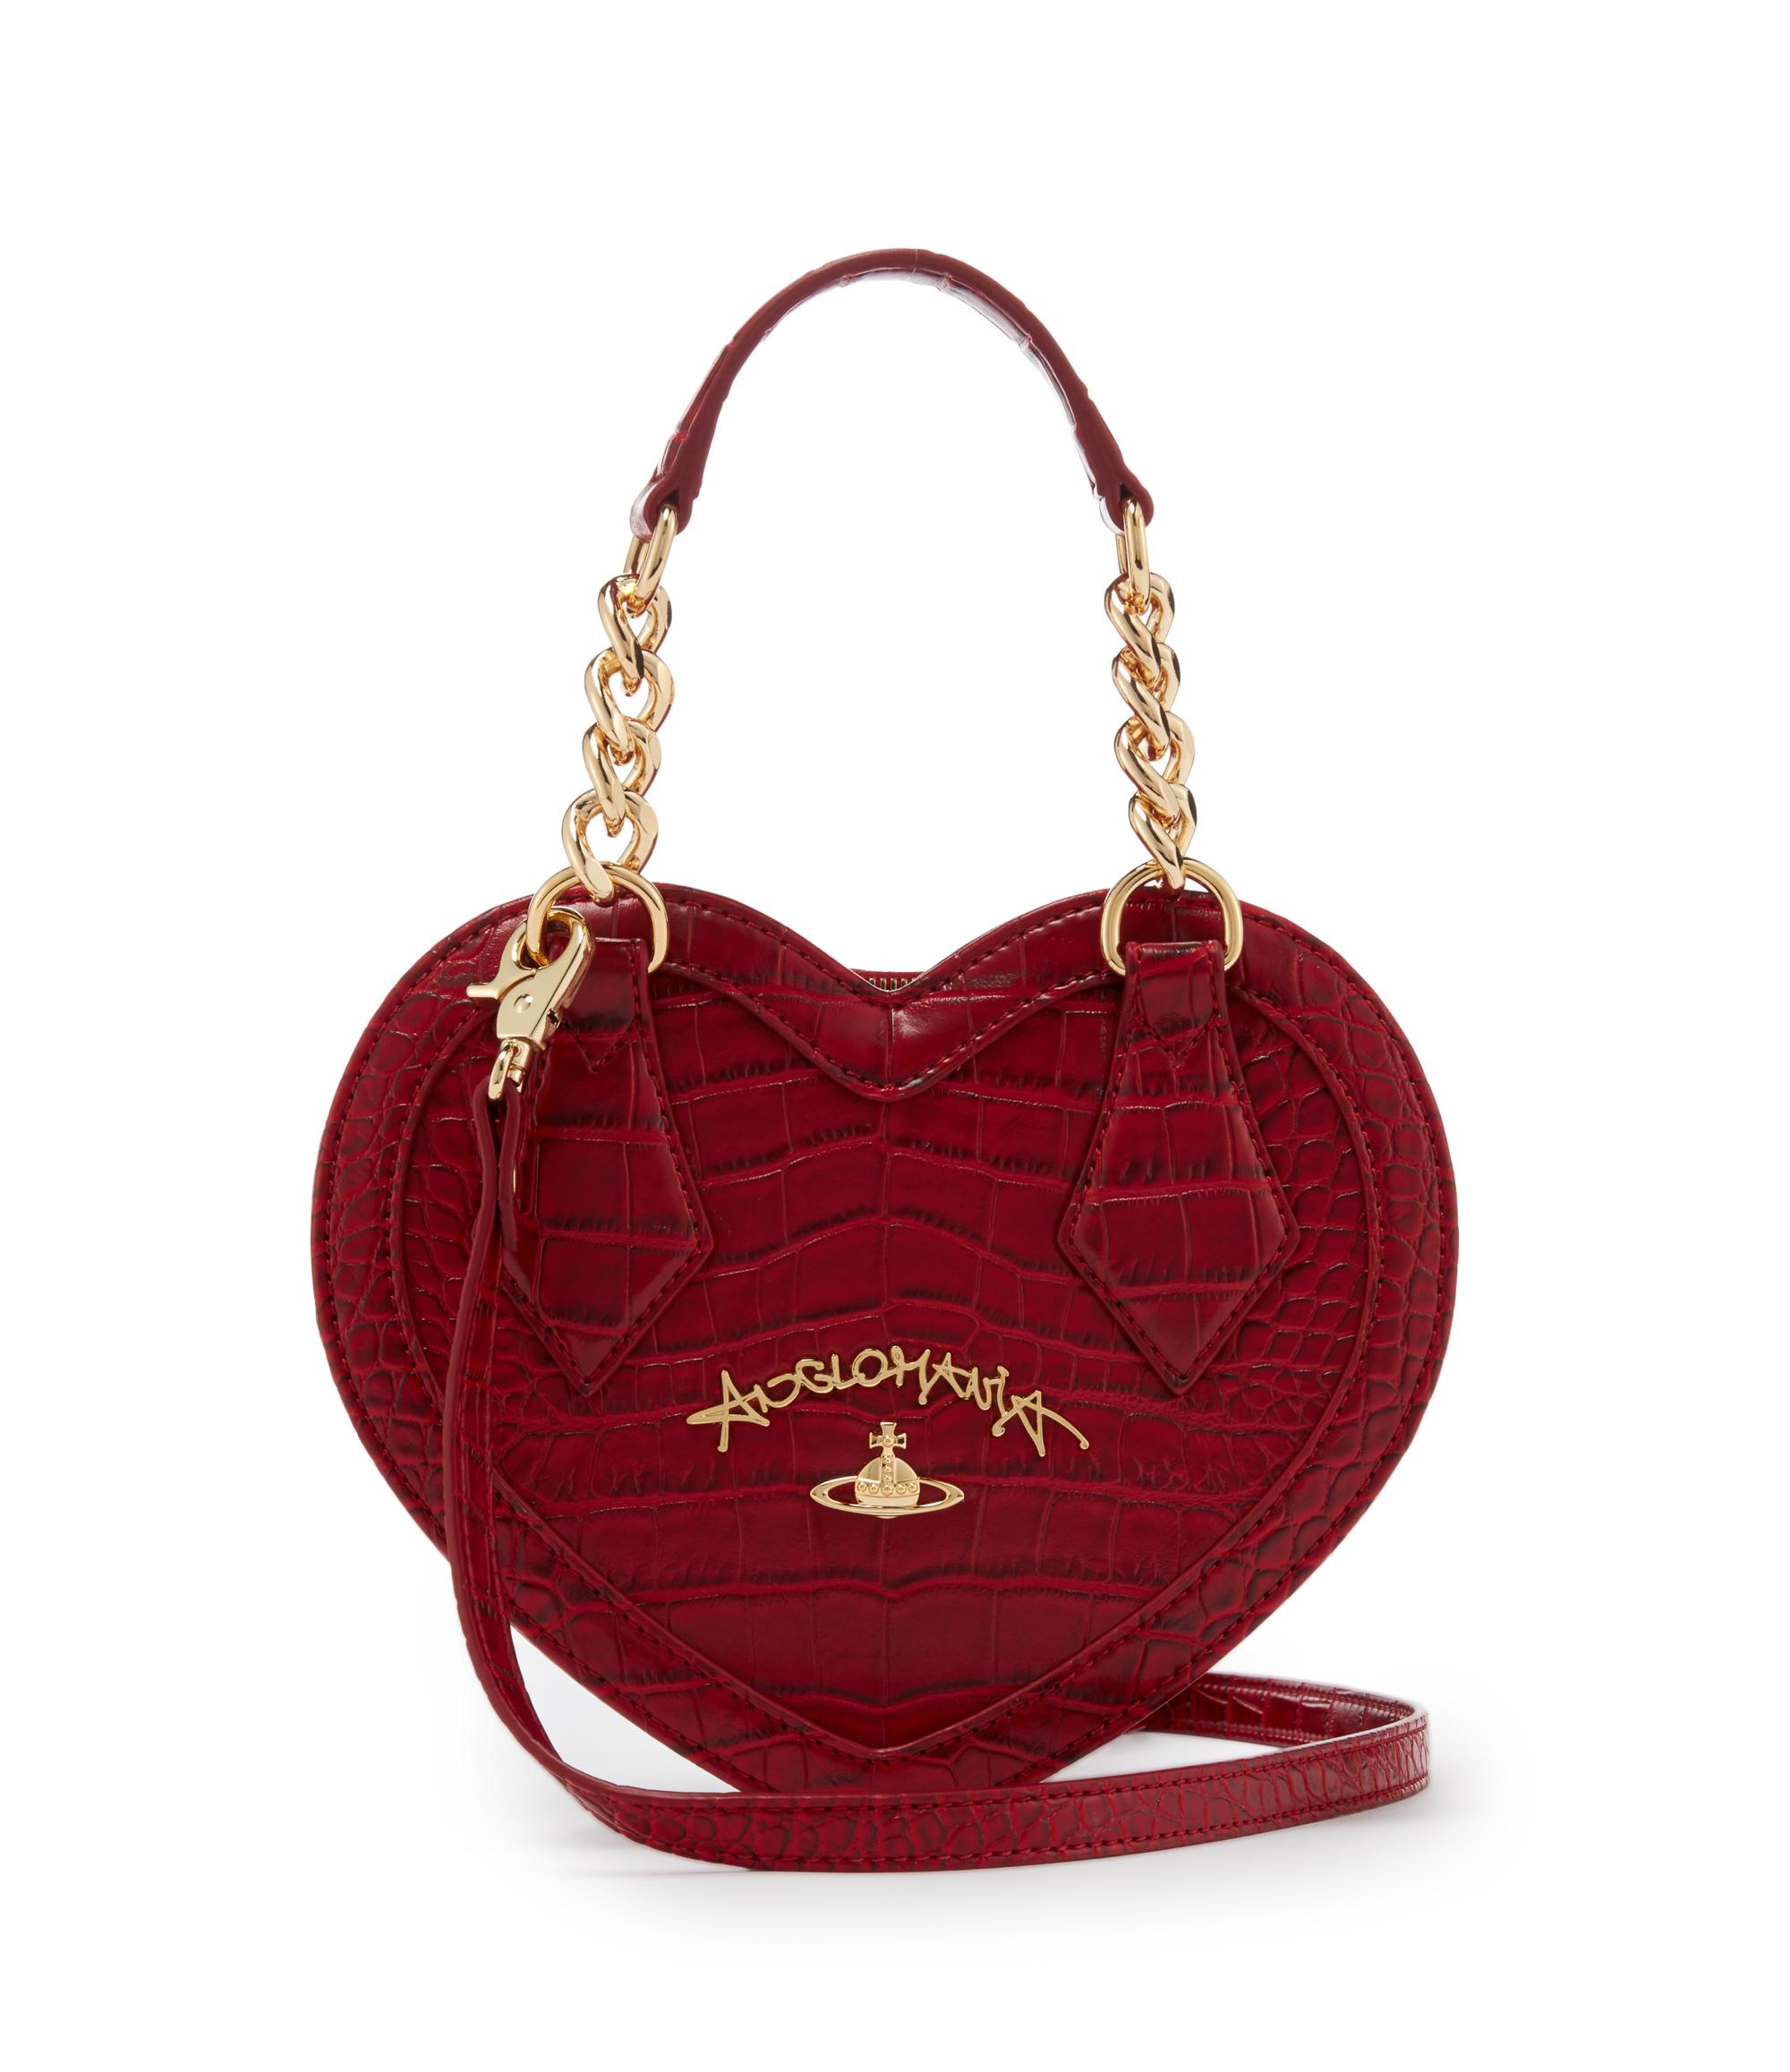 Vivienne Westwood Handbag Nz Reviews | semashow.com